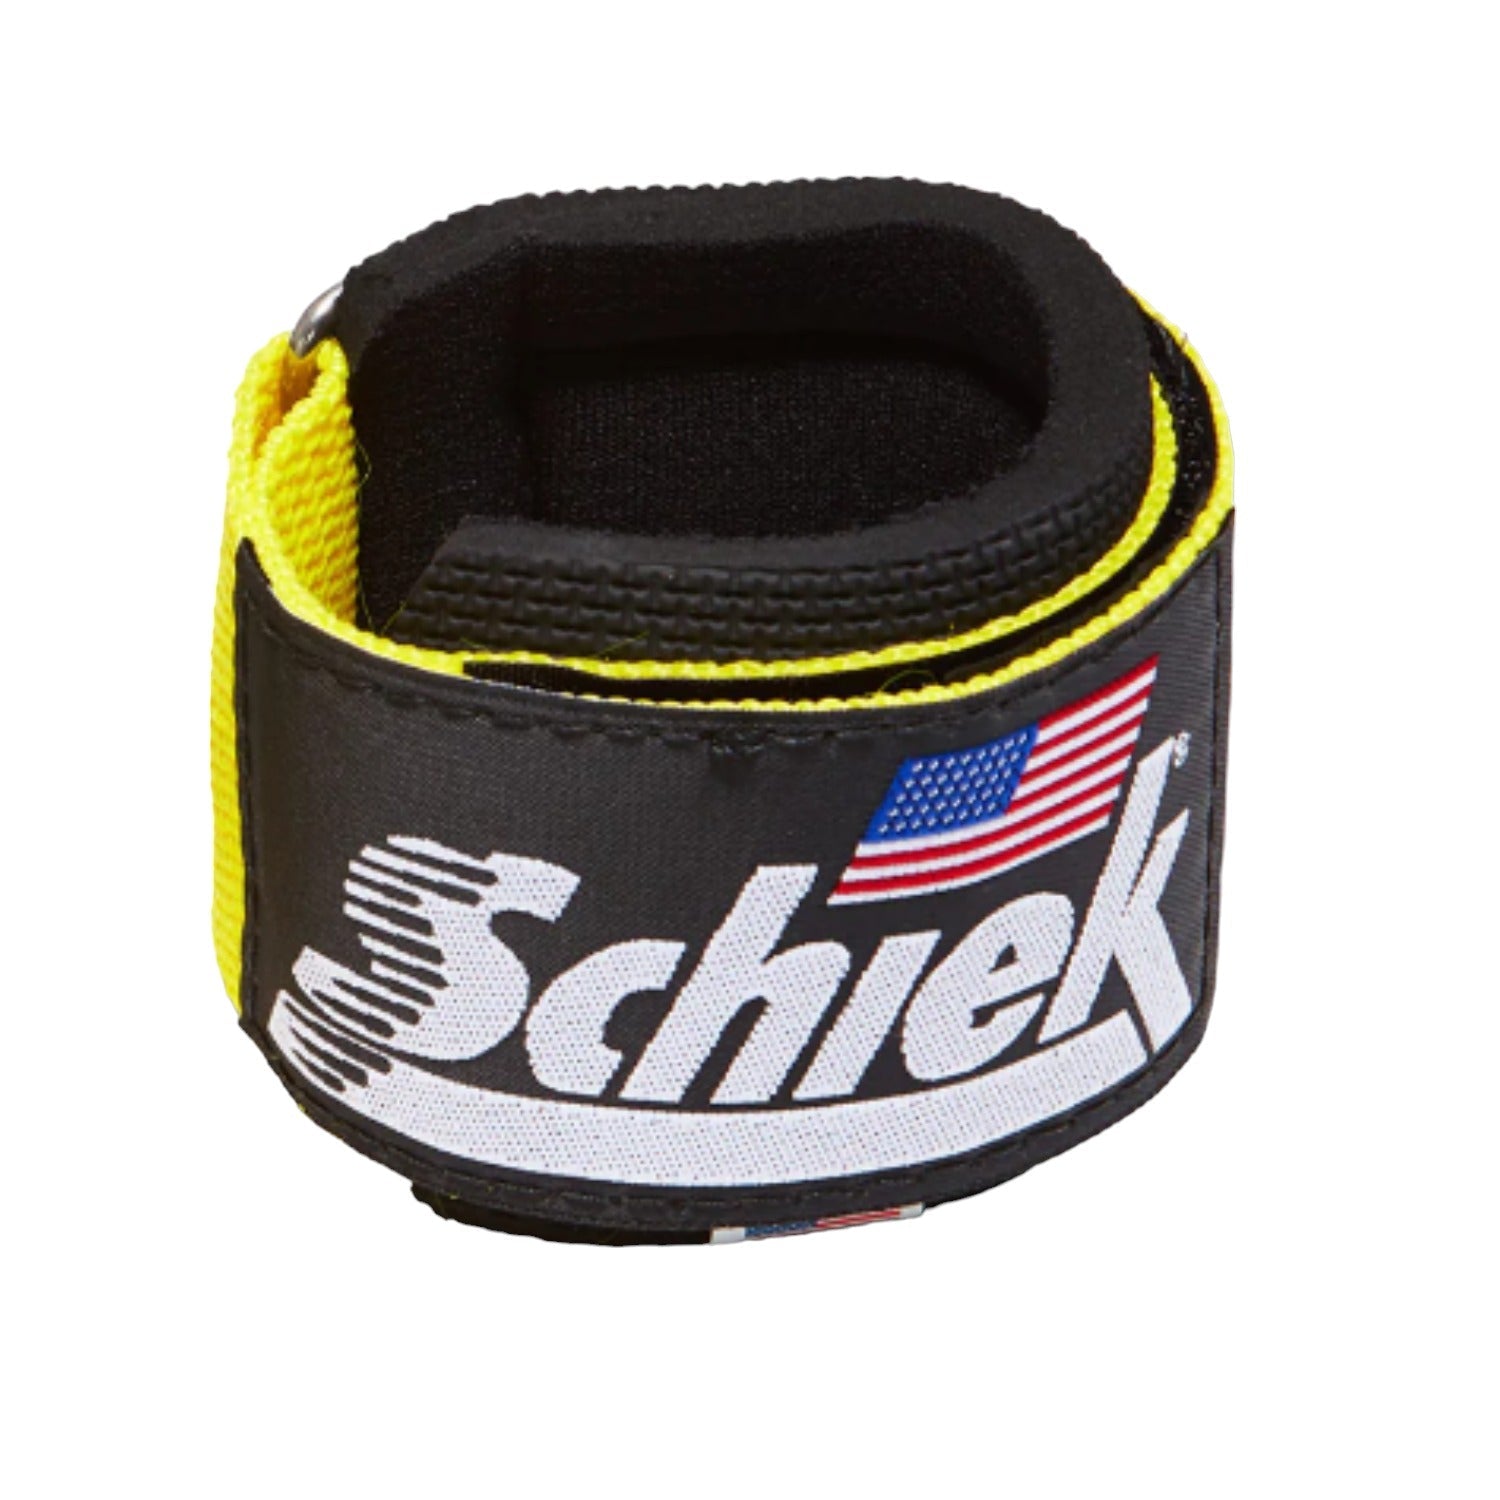 Schiek Wrist Supports-Wrist Wraps-Schiek Sports-7